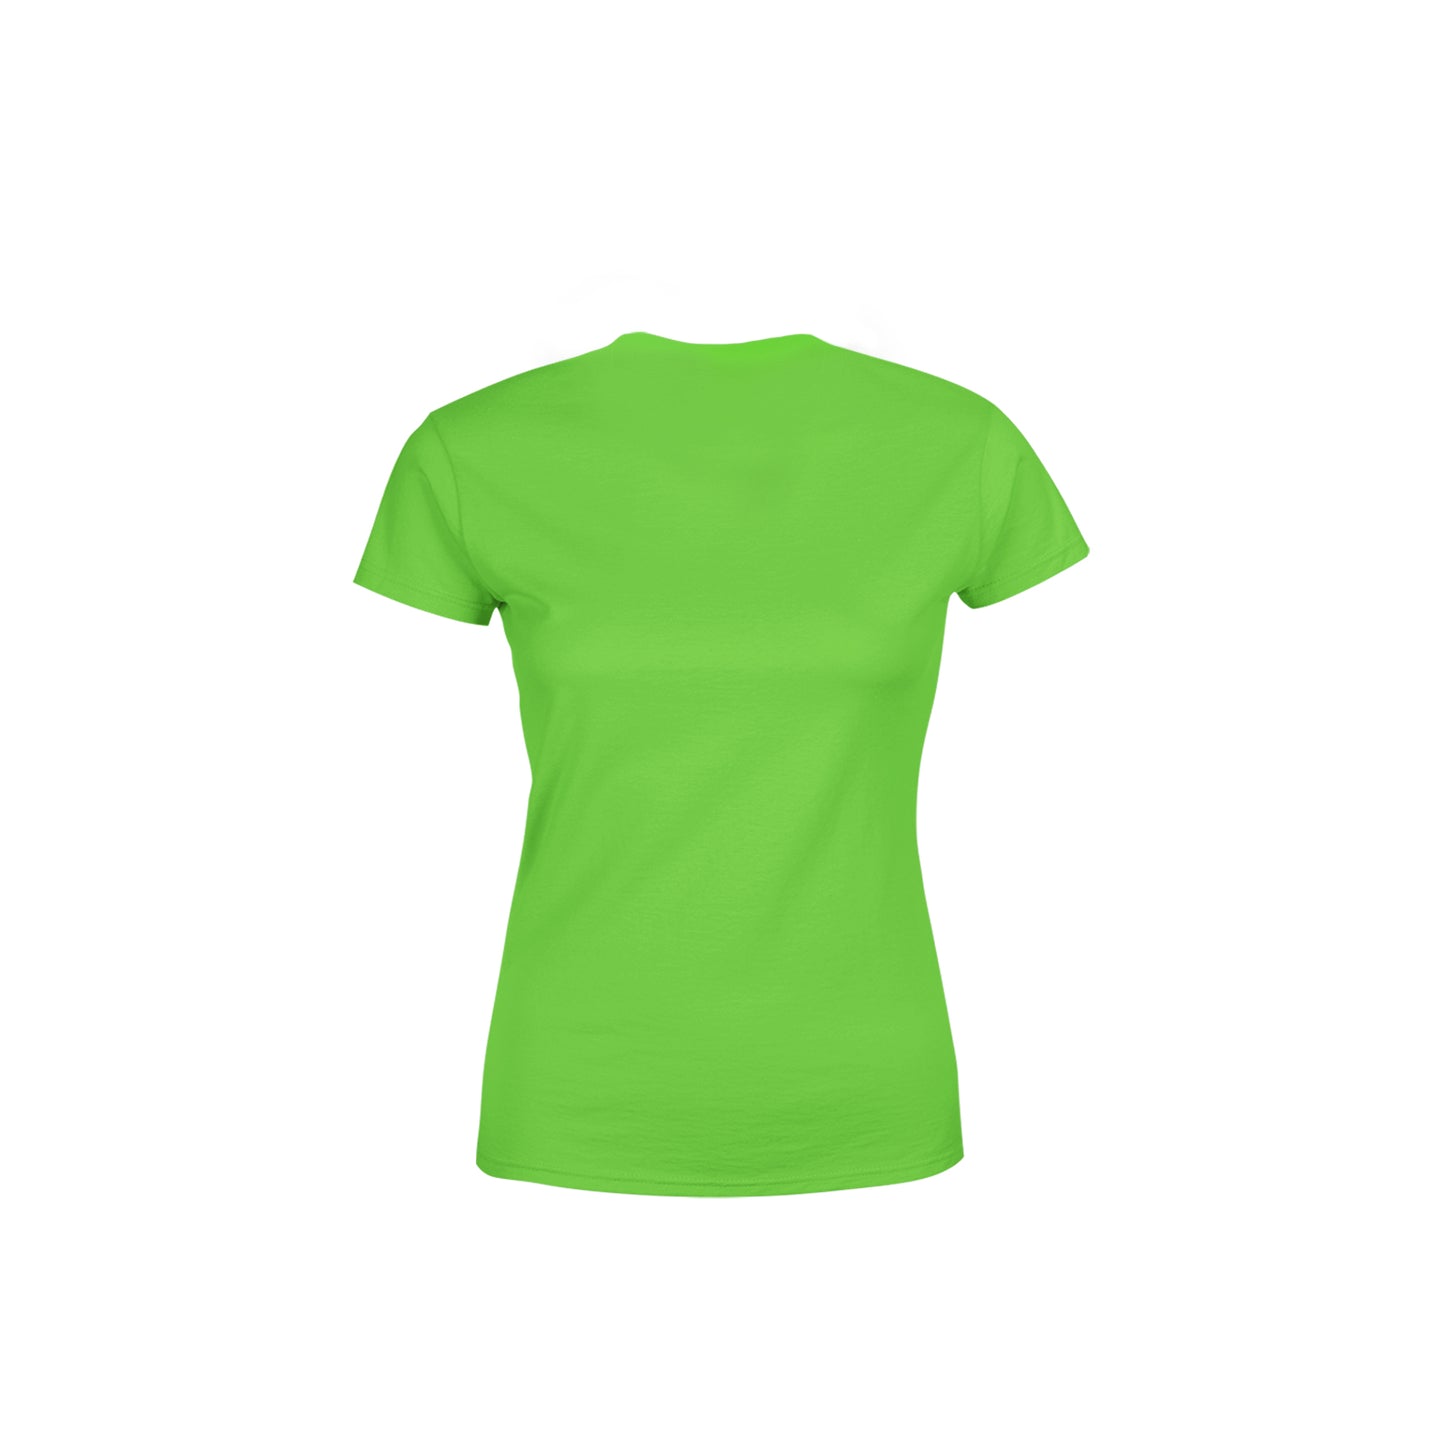 76 Number Women's T-Shirt (Liril Green)